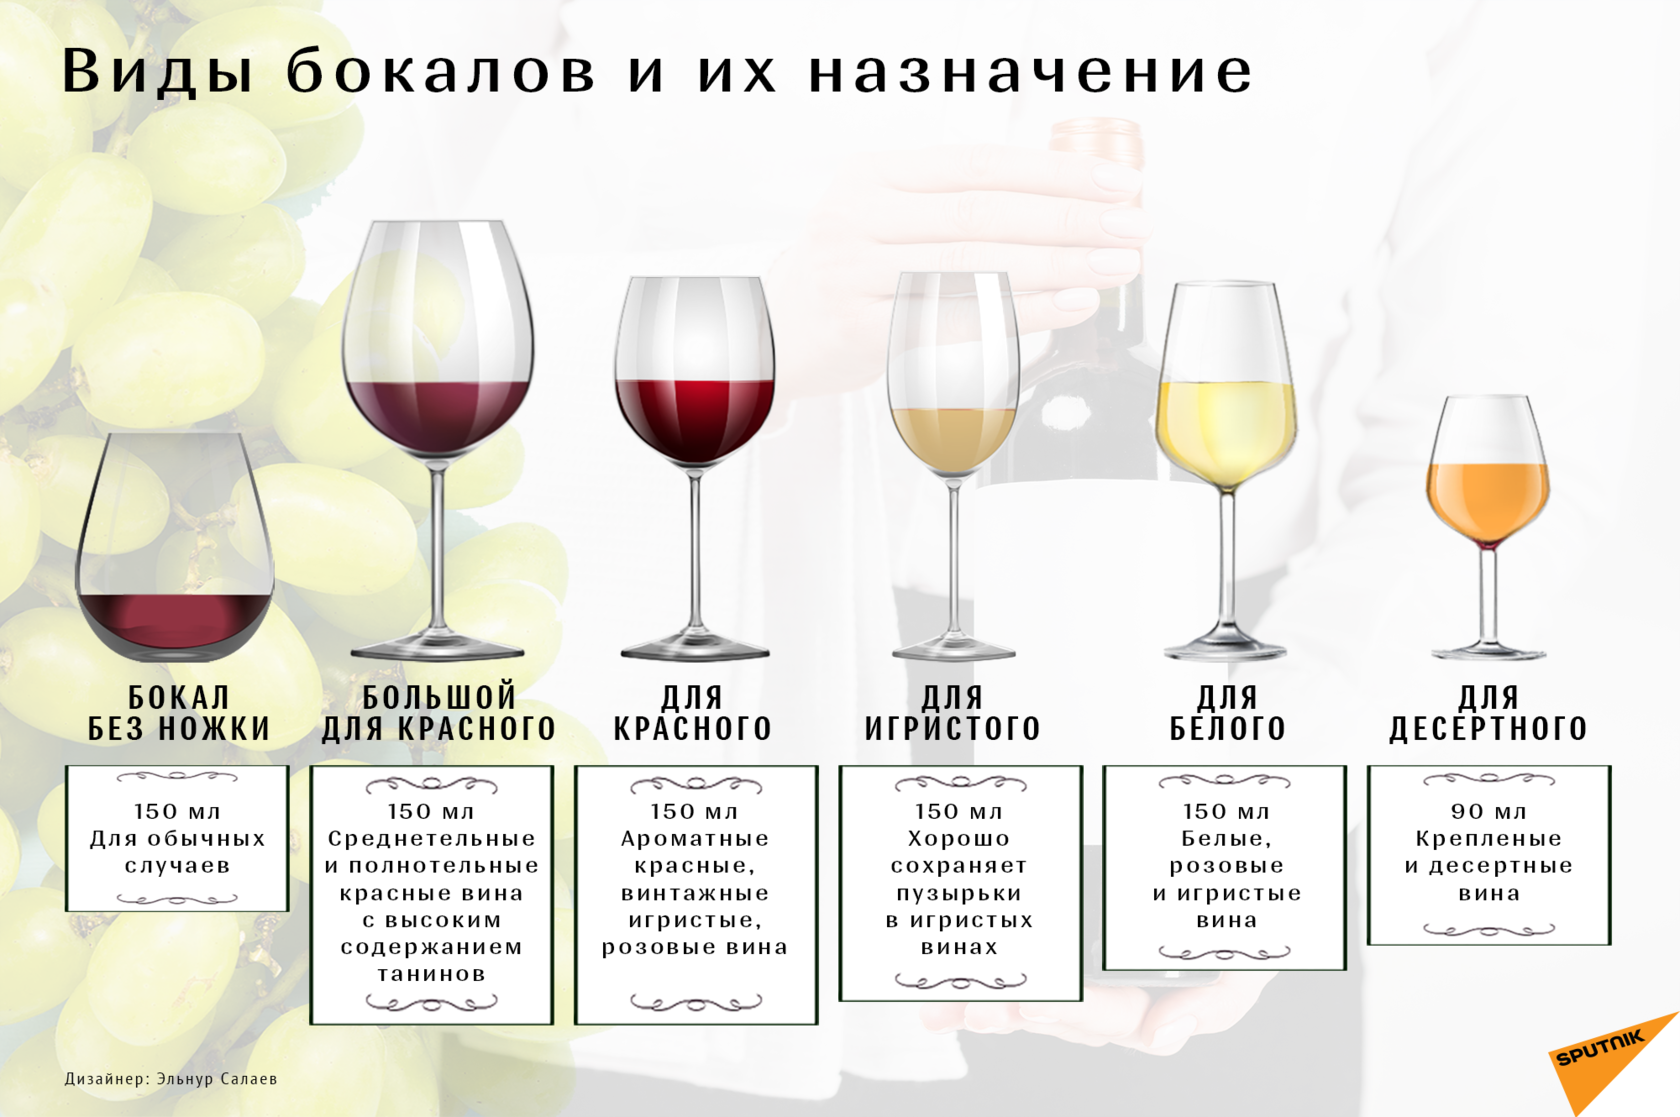 Какое вино полезнее и почему: красное, белое или розовое